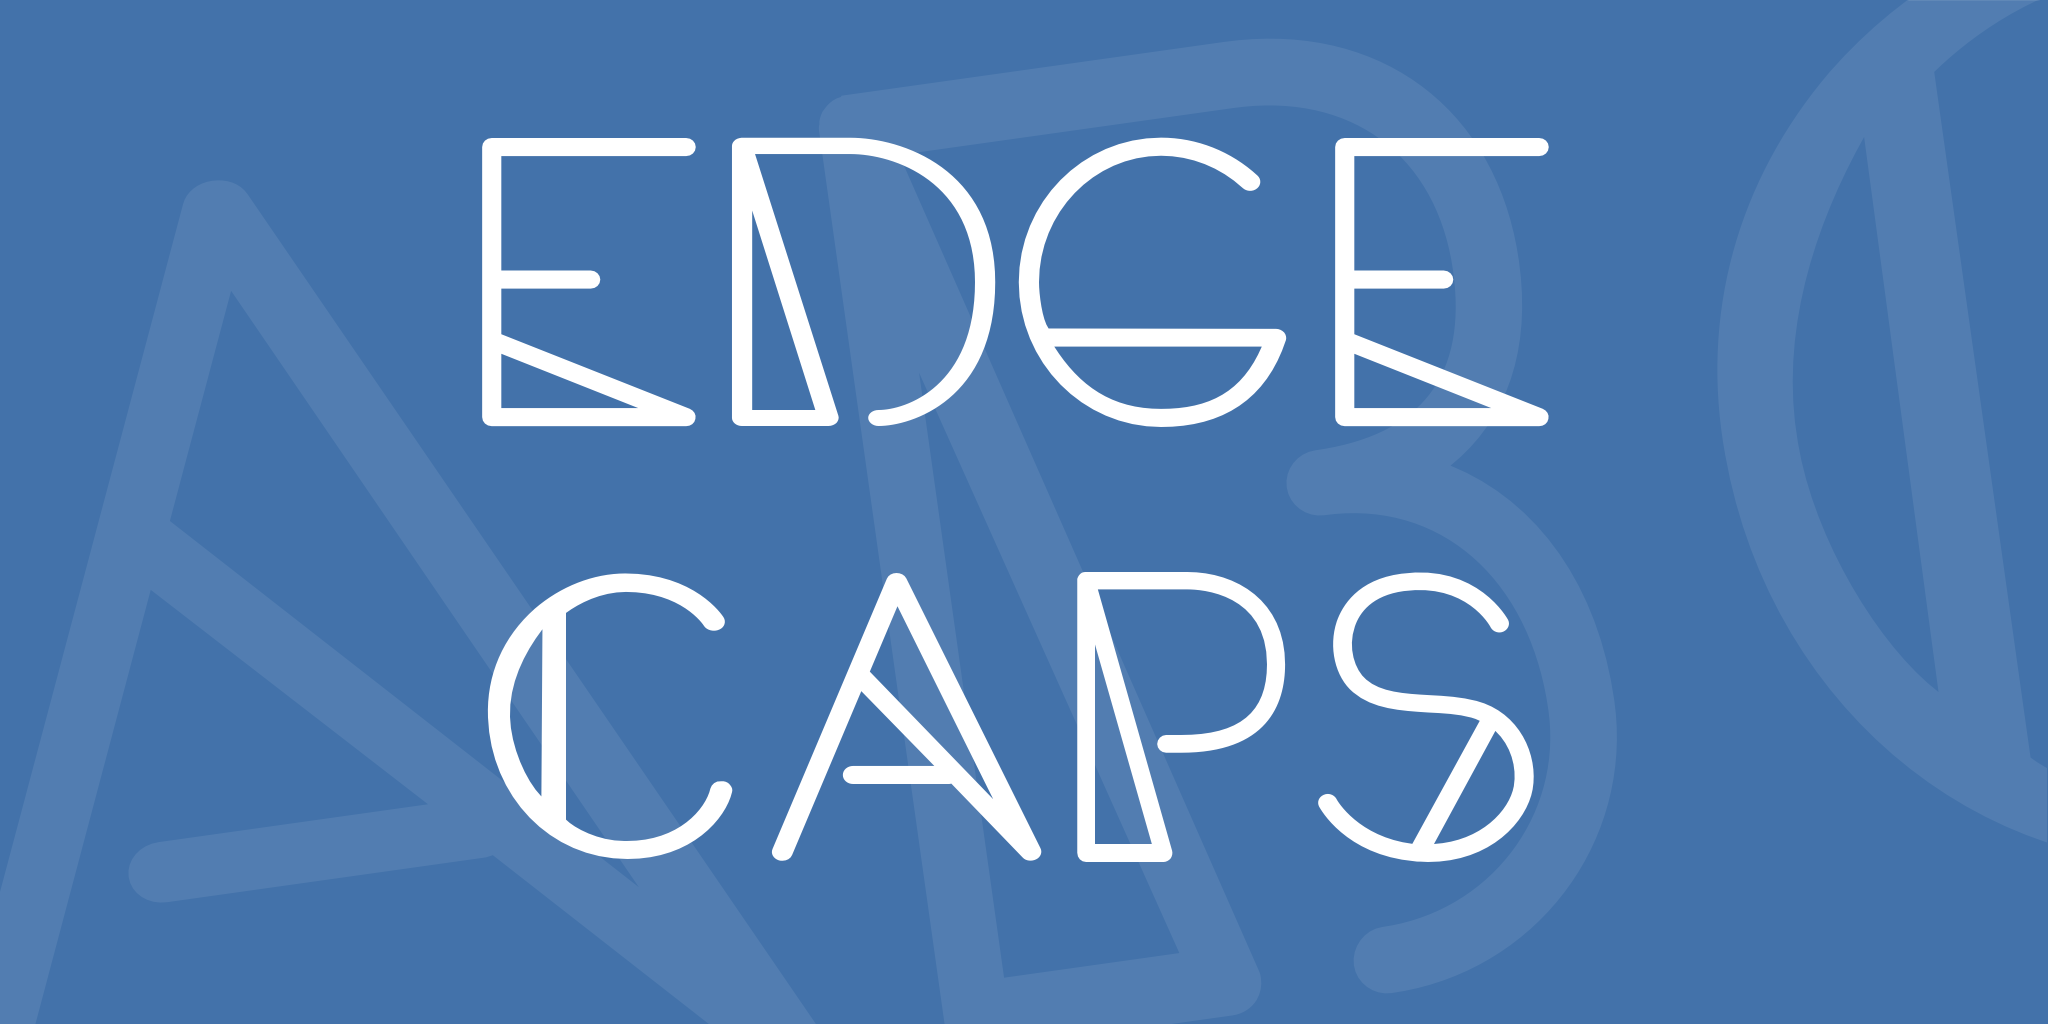 Edge Caps